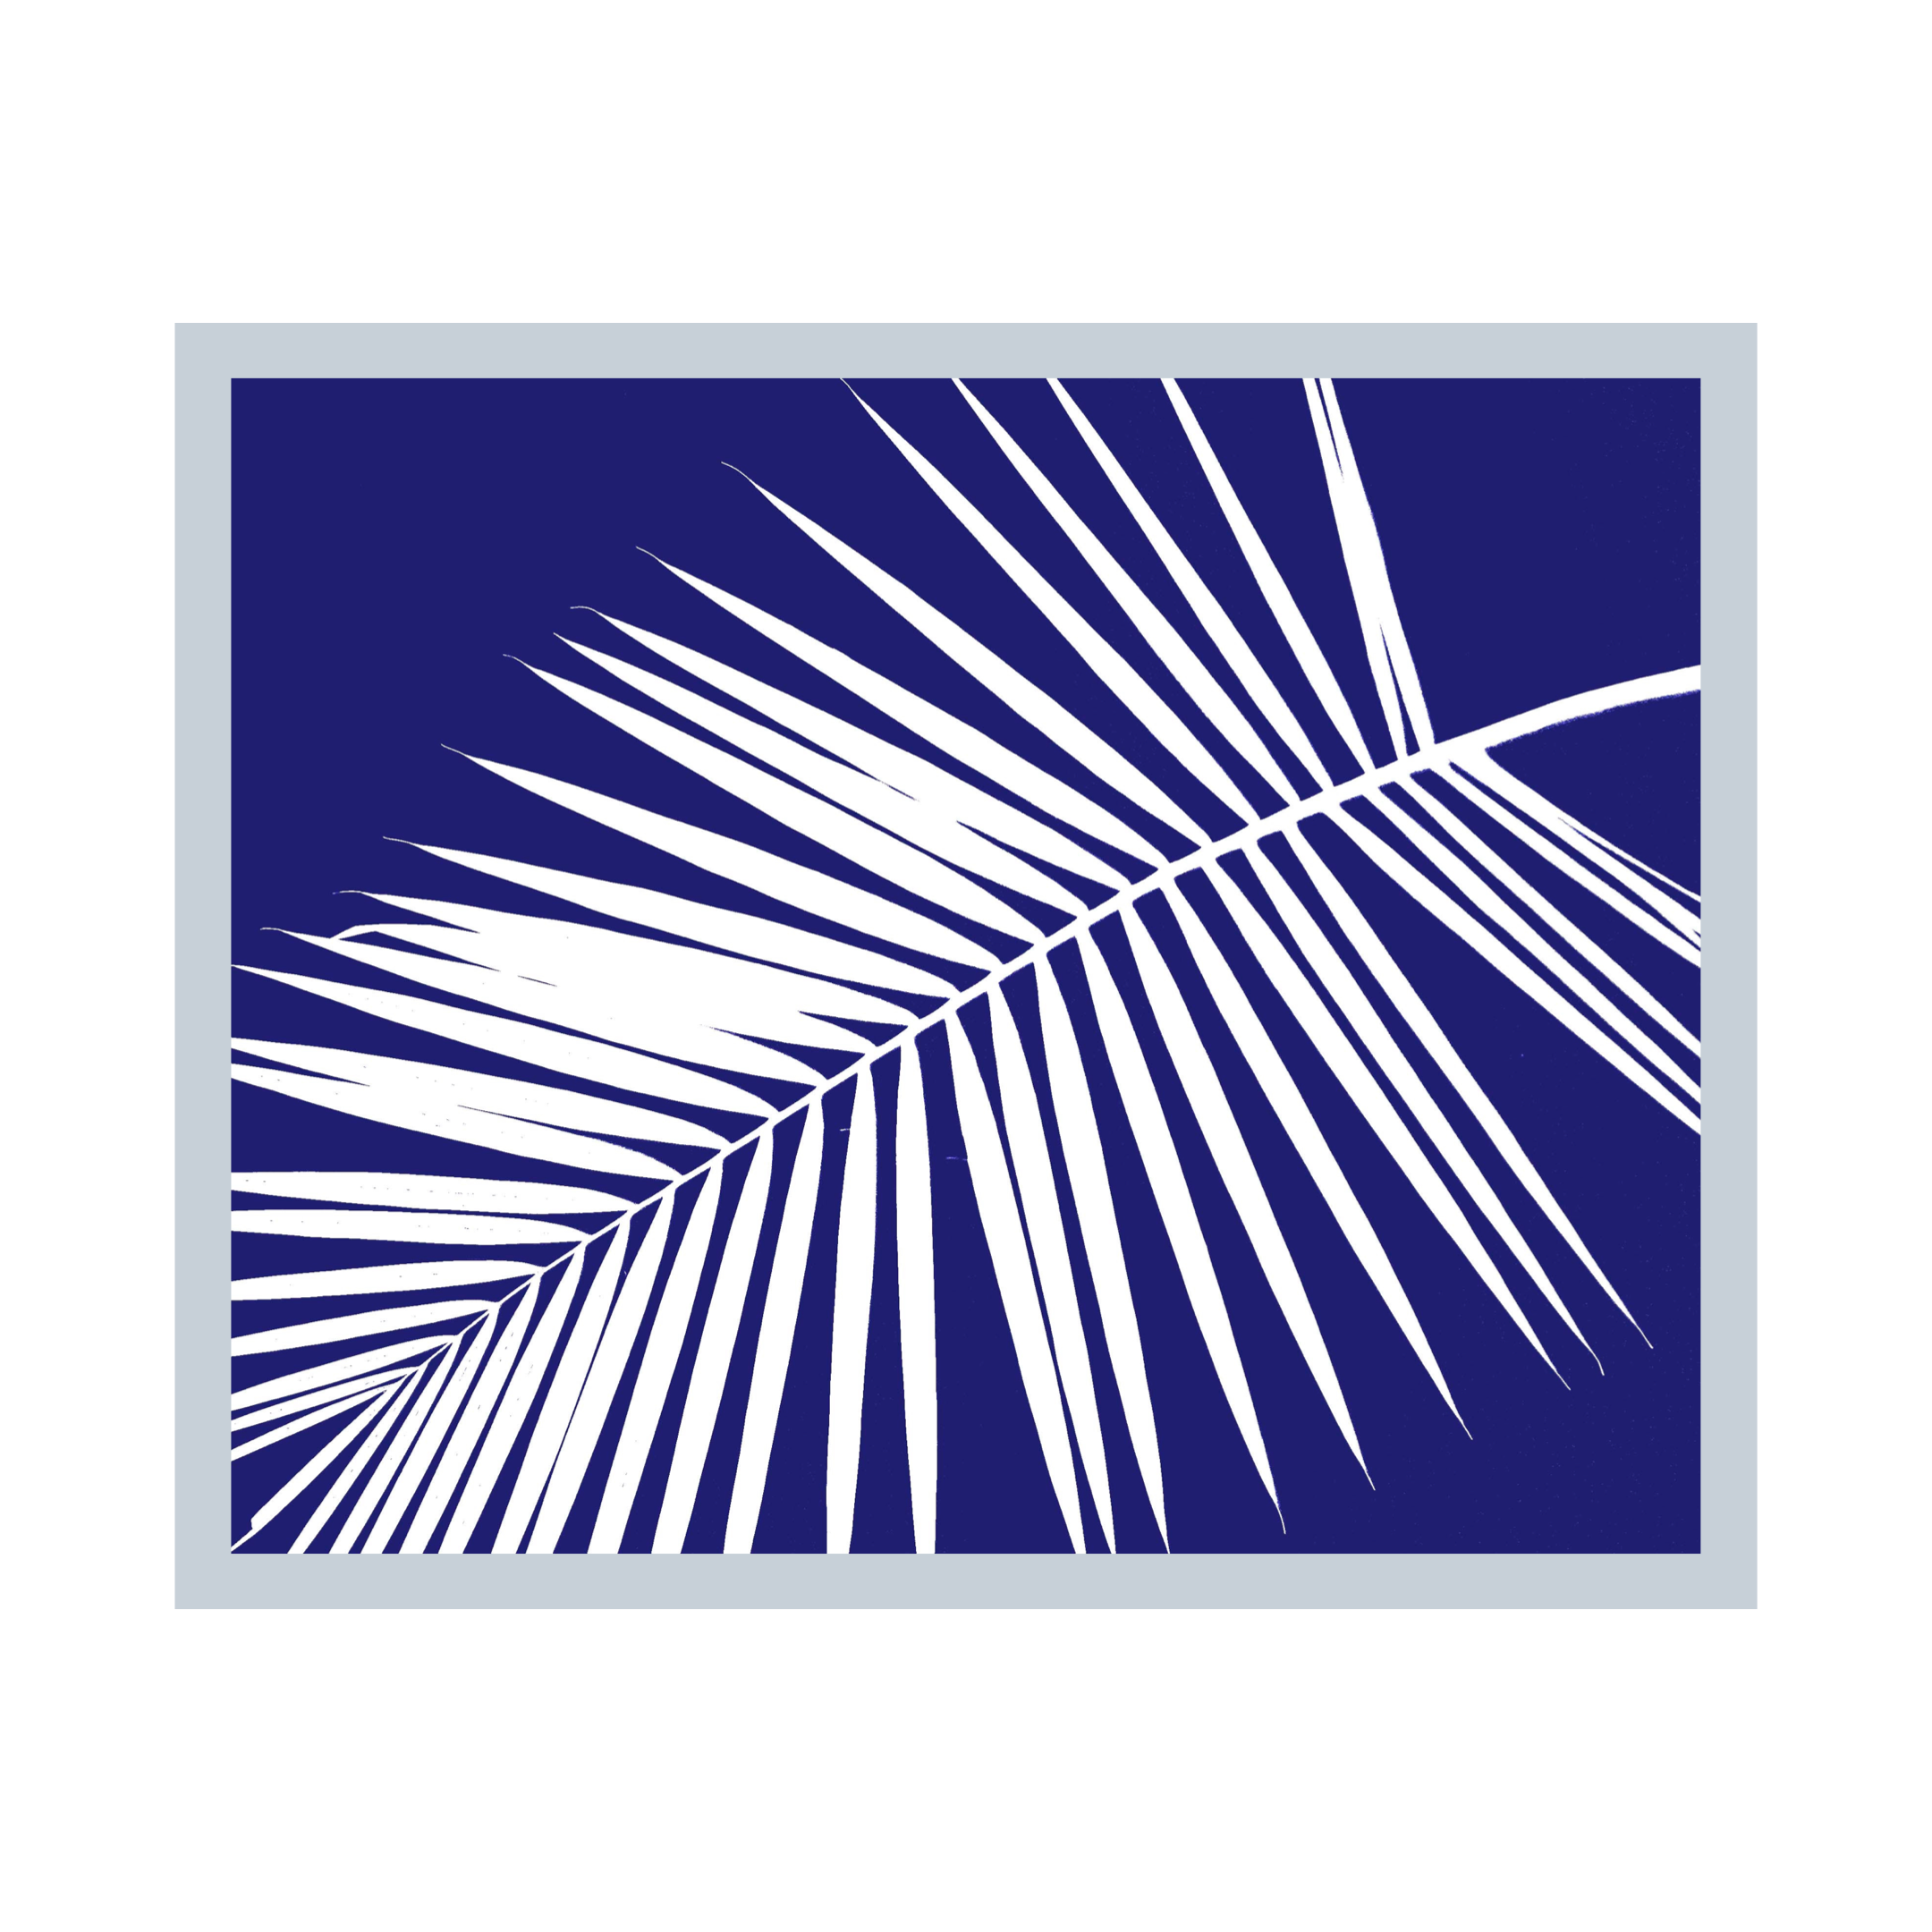 Diagonal Palm Frond